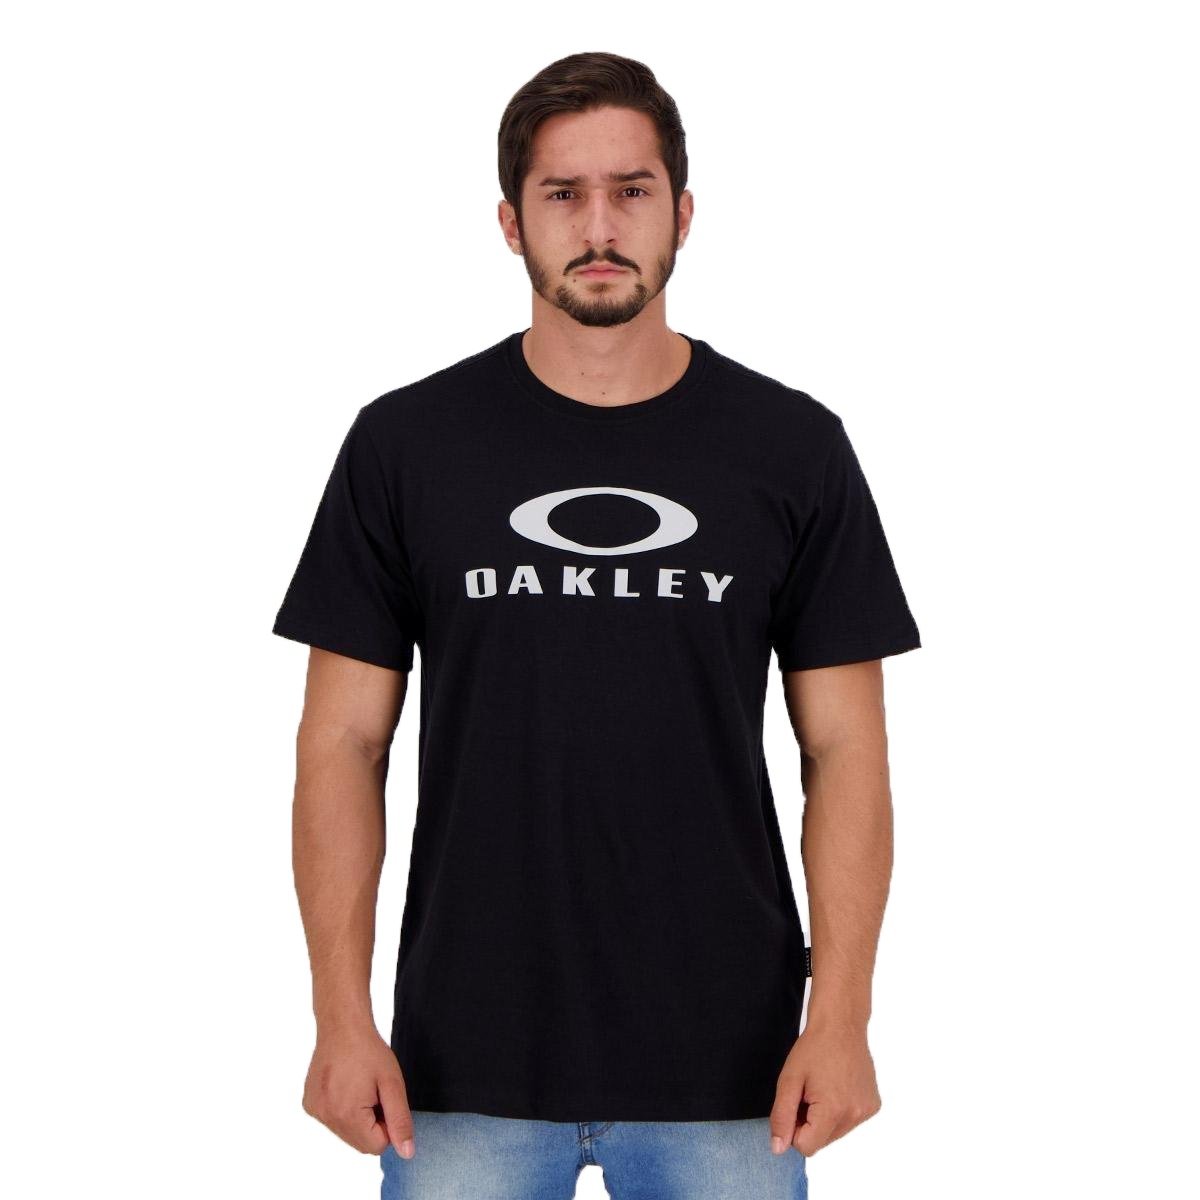 Camiseta Oakley O-Bark Ss Tee, tamanho G, cor Branca